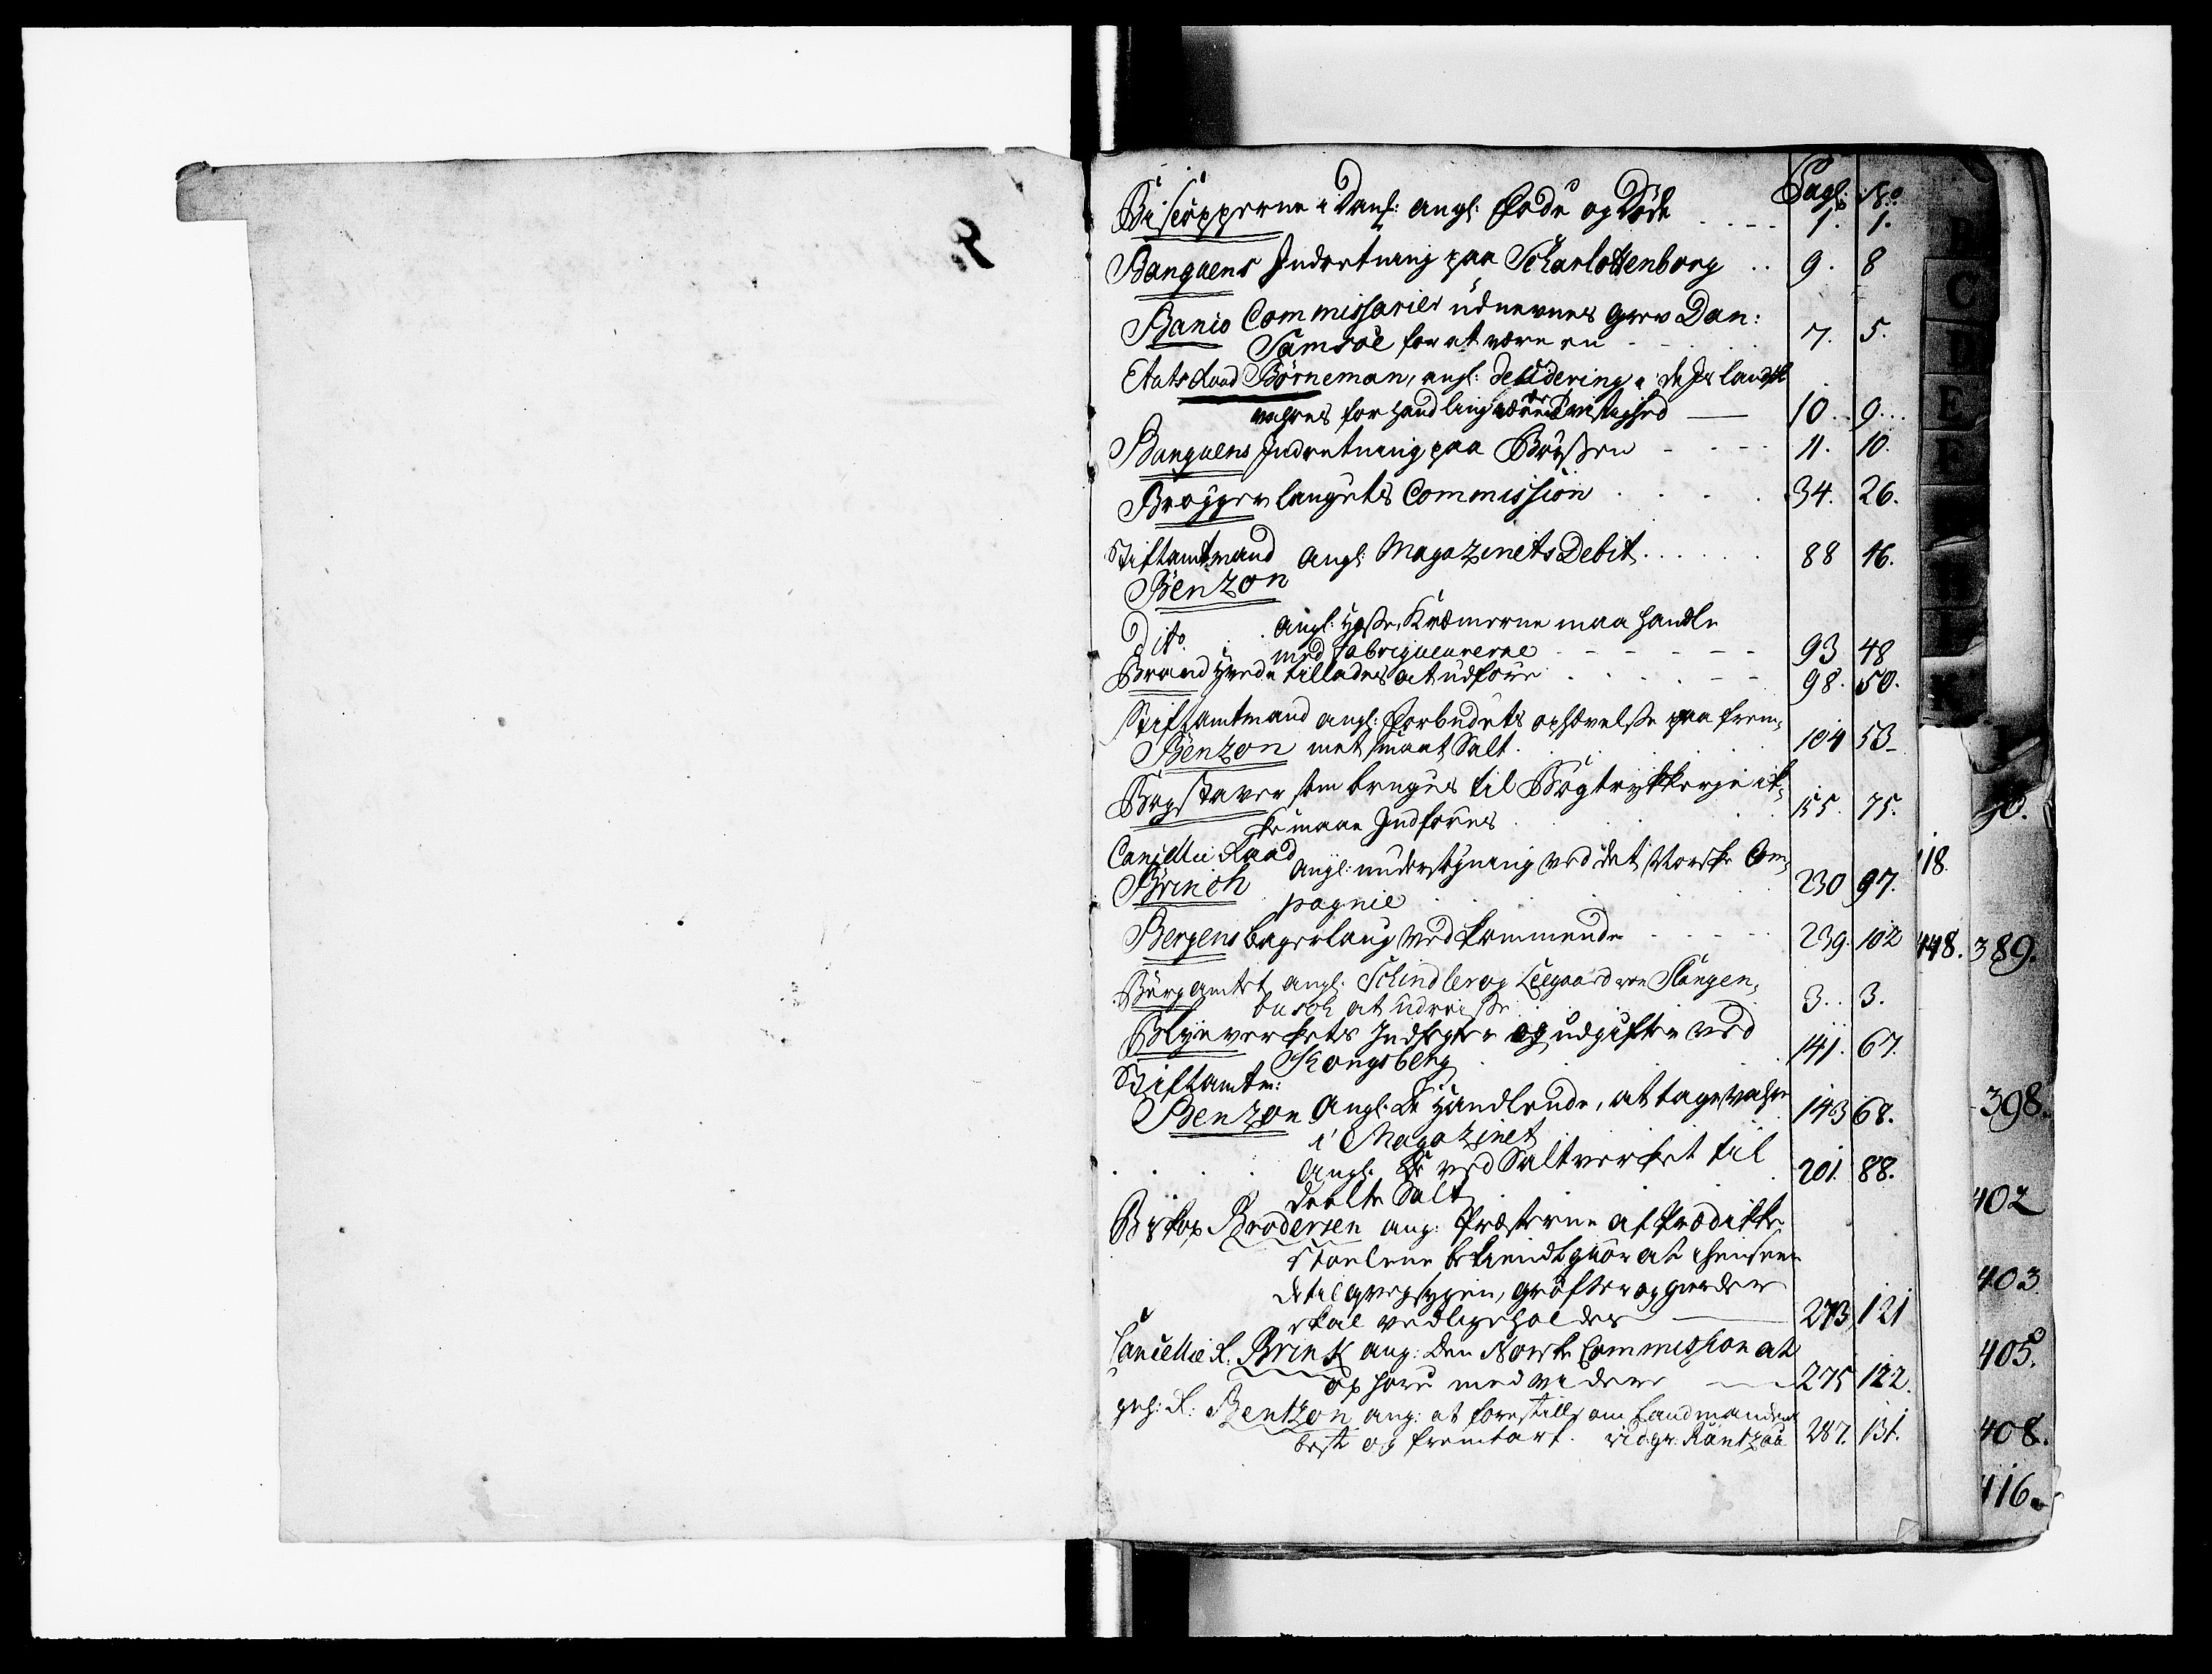 Kommercekollegiet, Dansk-Norske Sekretariat, DRA/A-0001/02/18: Kgl. Ordres. Missiver og Reskr., 1735-1770